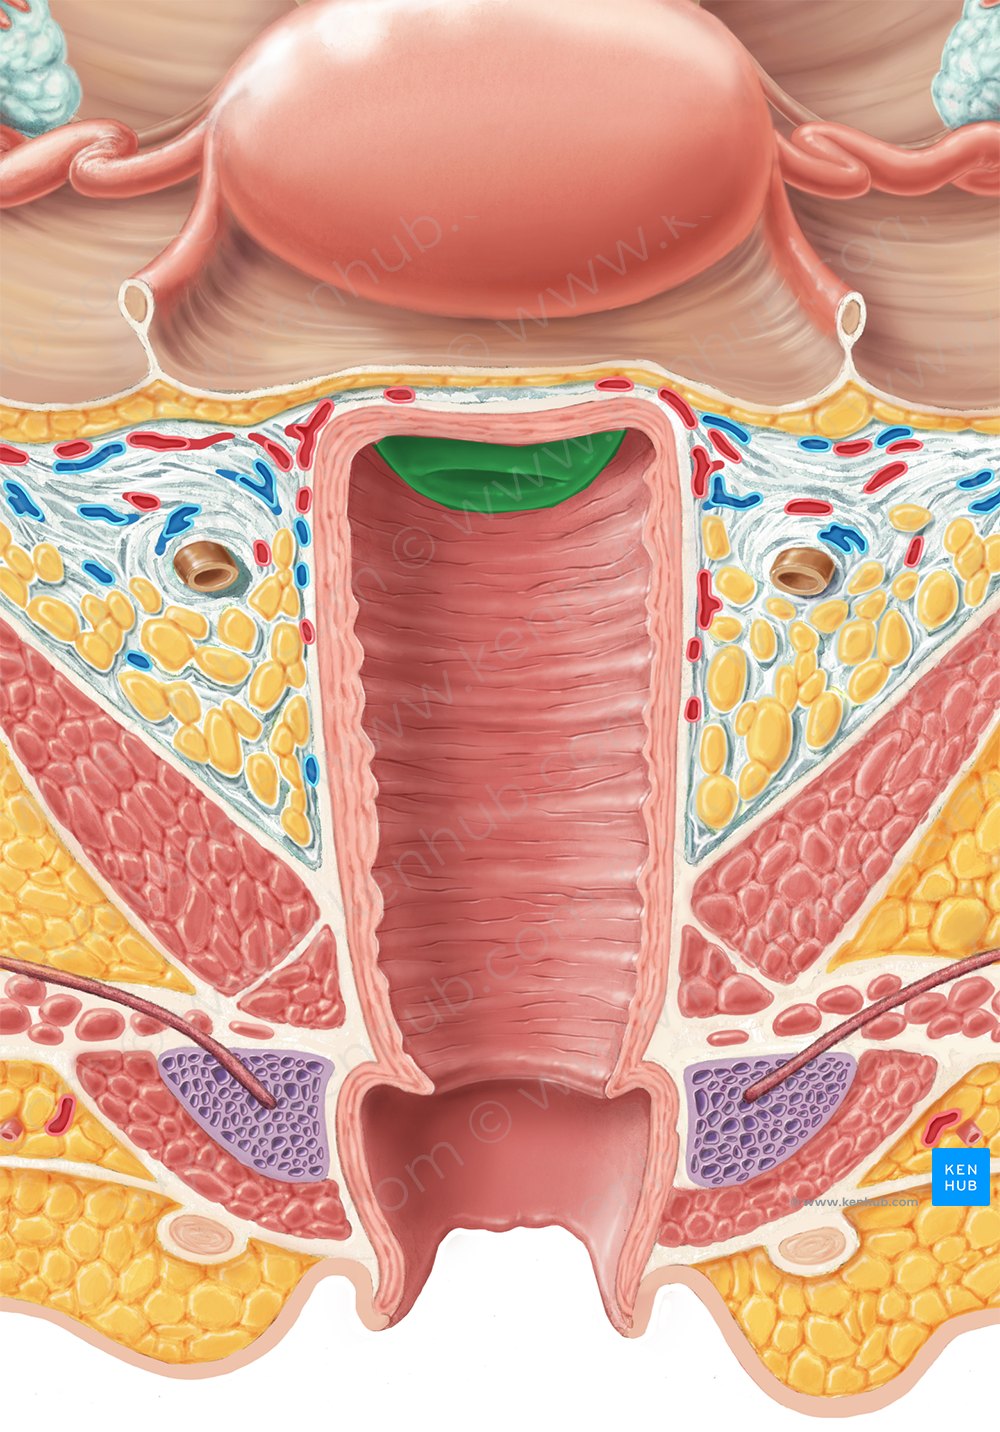 Cervix of uterus (#2577)